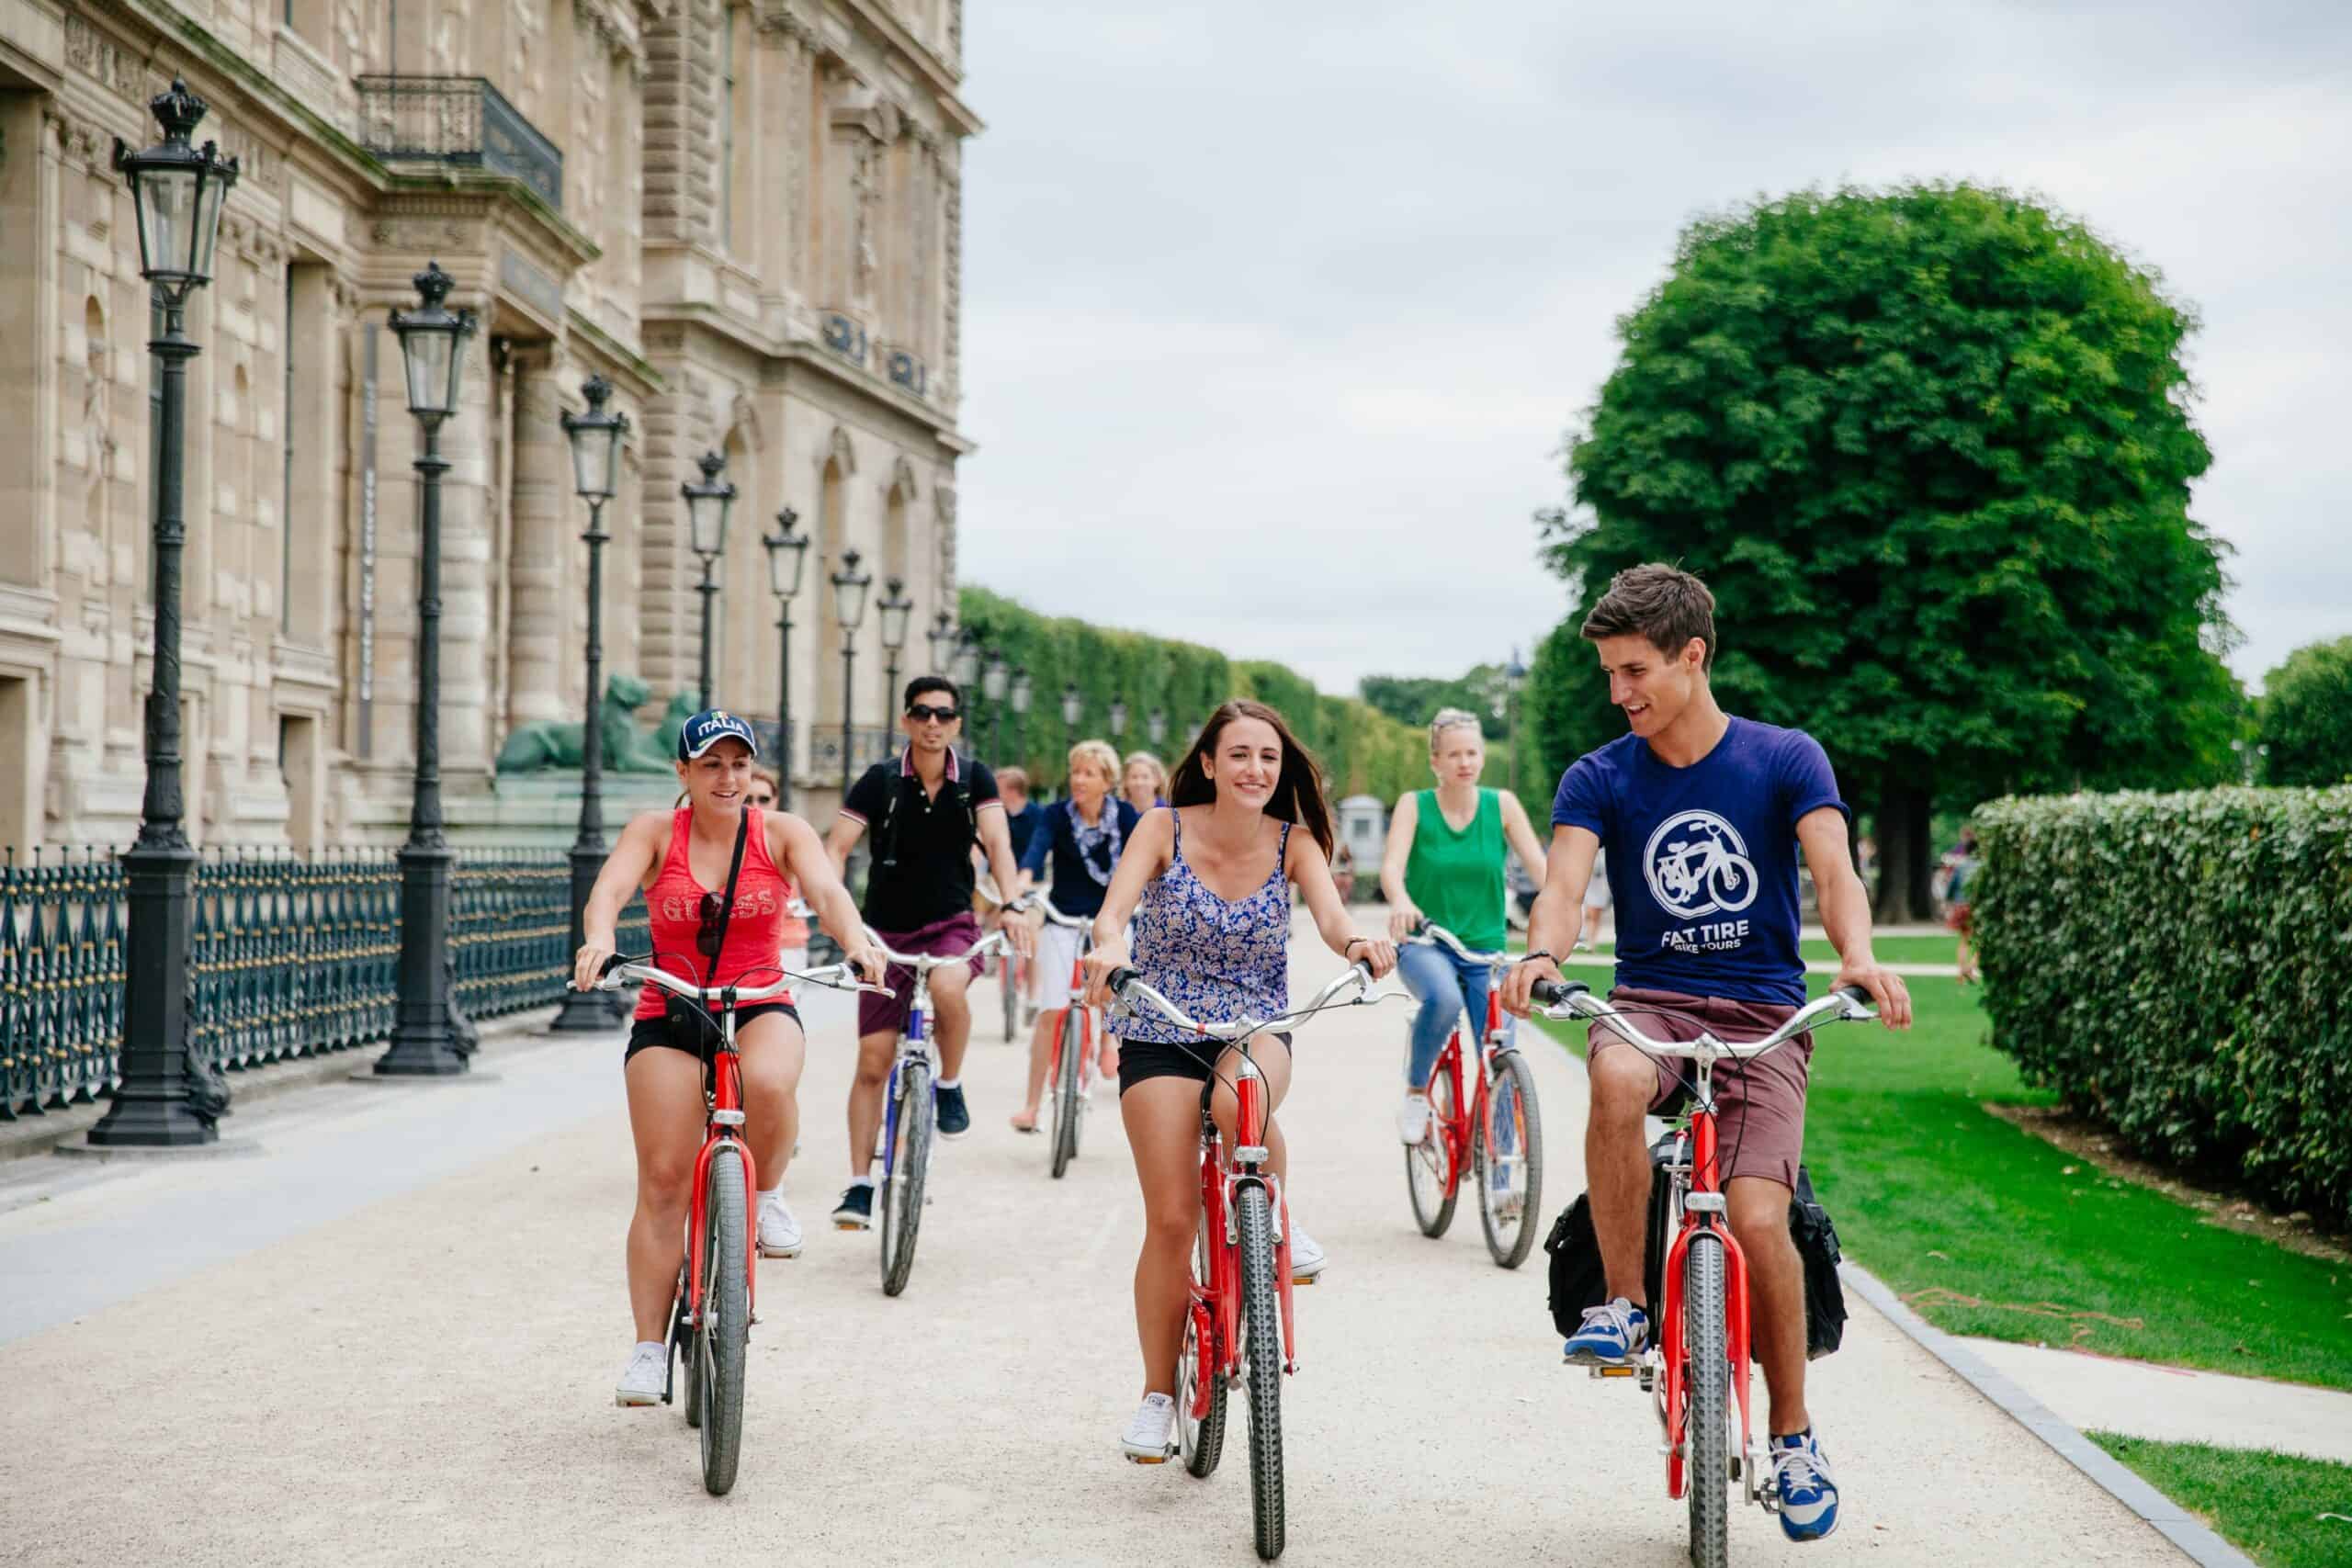 Paris Day Bike Tour Explore Paris Attractions Fat Tire Tours